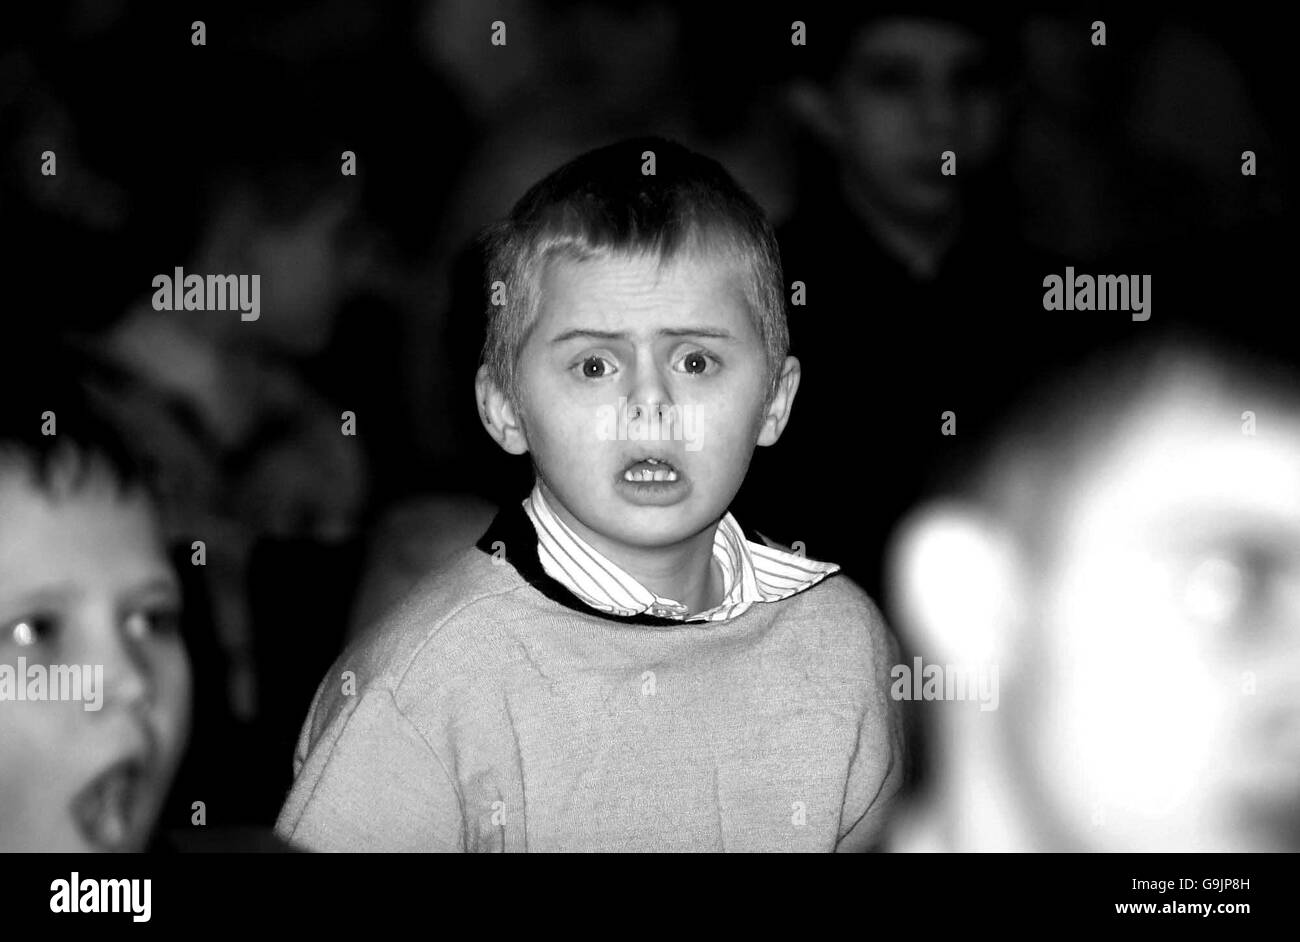 Russia homeless children Stock Photo